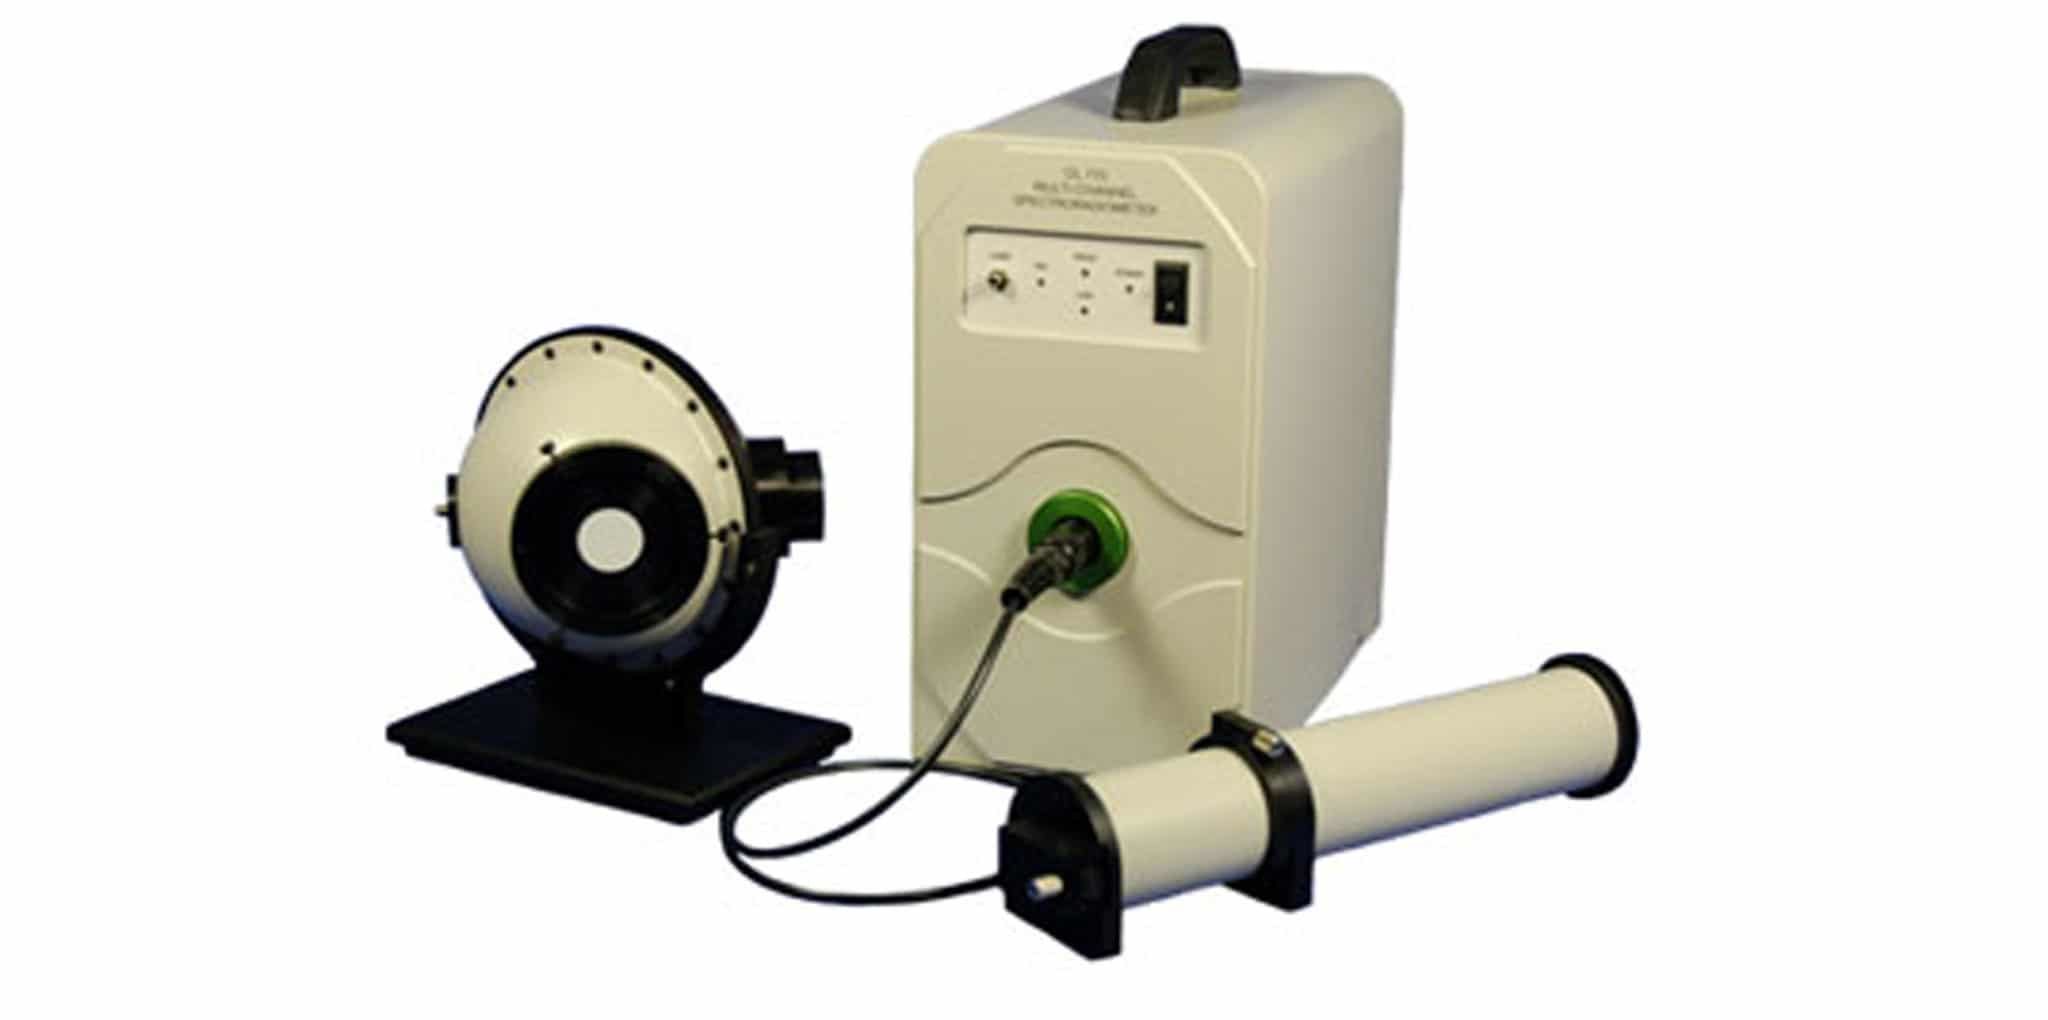 Spectroradiomètre multi-canaux compact et rapide pour la mesure de diodes type LED - OL 770_0